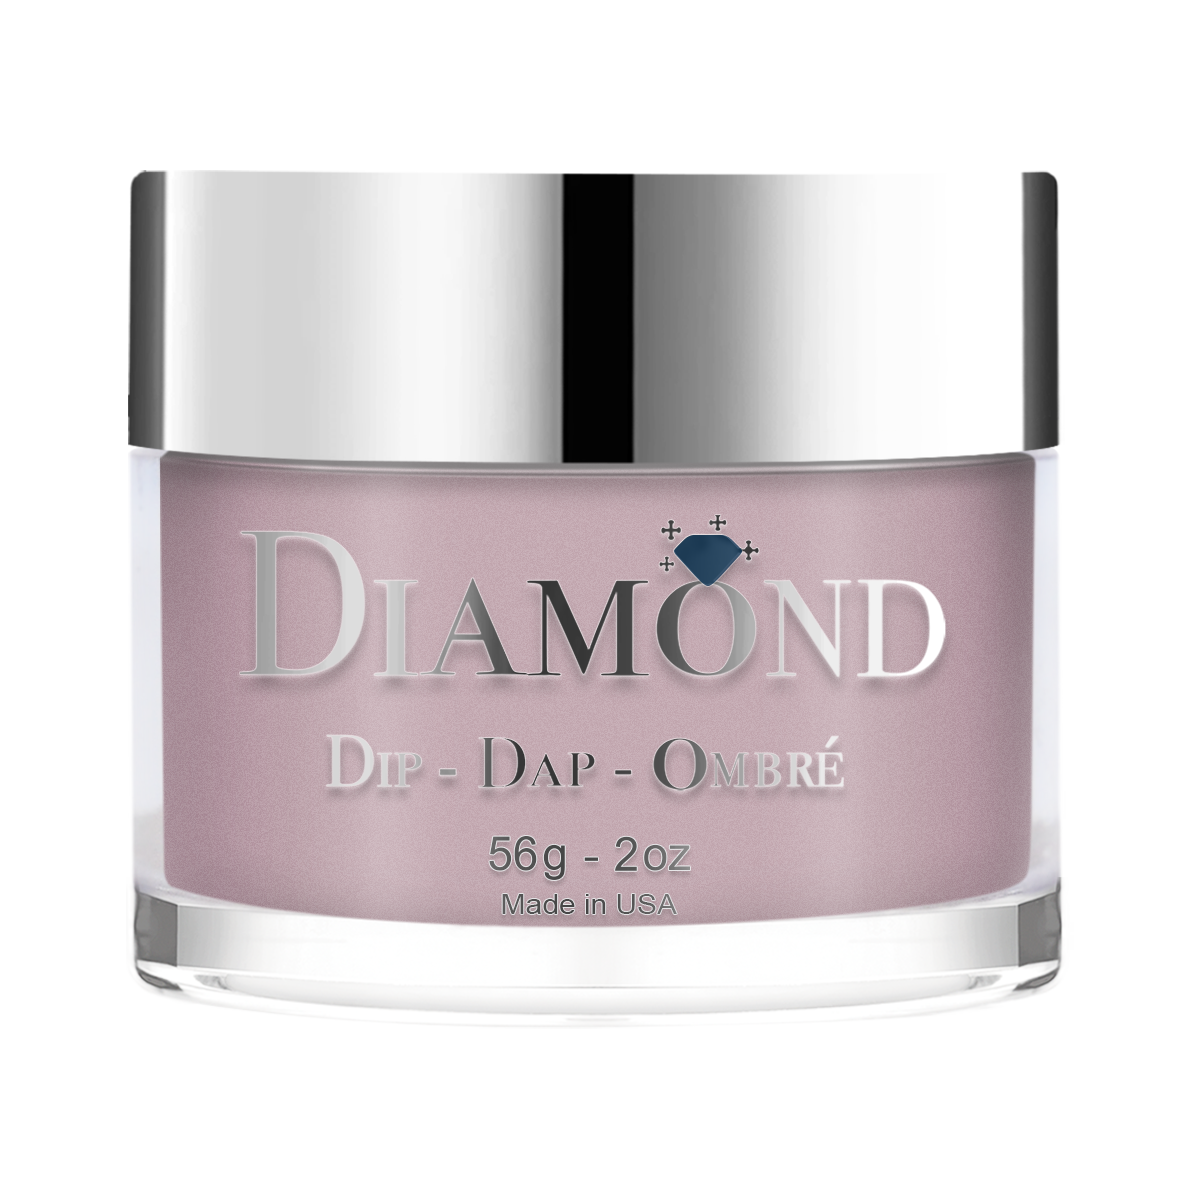 Diamond Dip & Dap Ombre Powder - 039